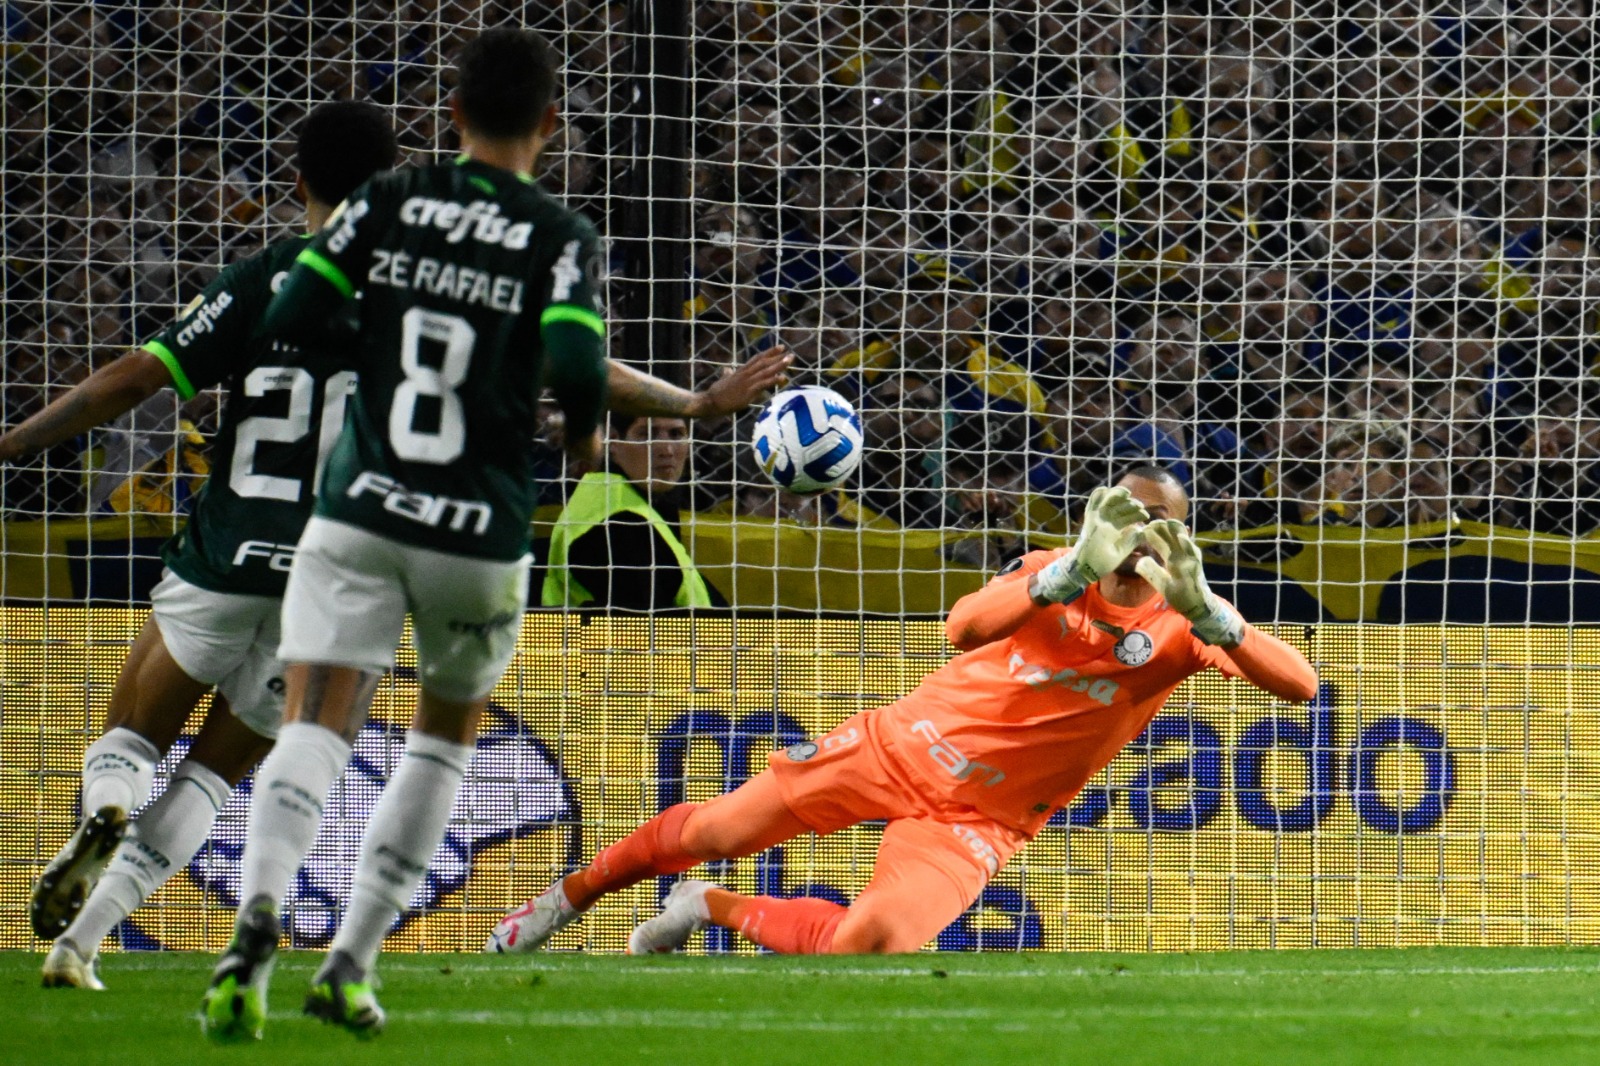 Weverton vê empate justo entre Palmeiras e Boca Juniors pela Libertadores. (Foto: Luis ROBAYO / AFP)